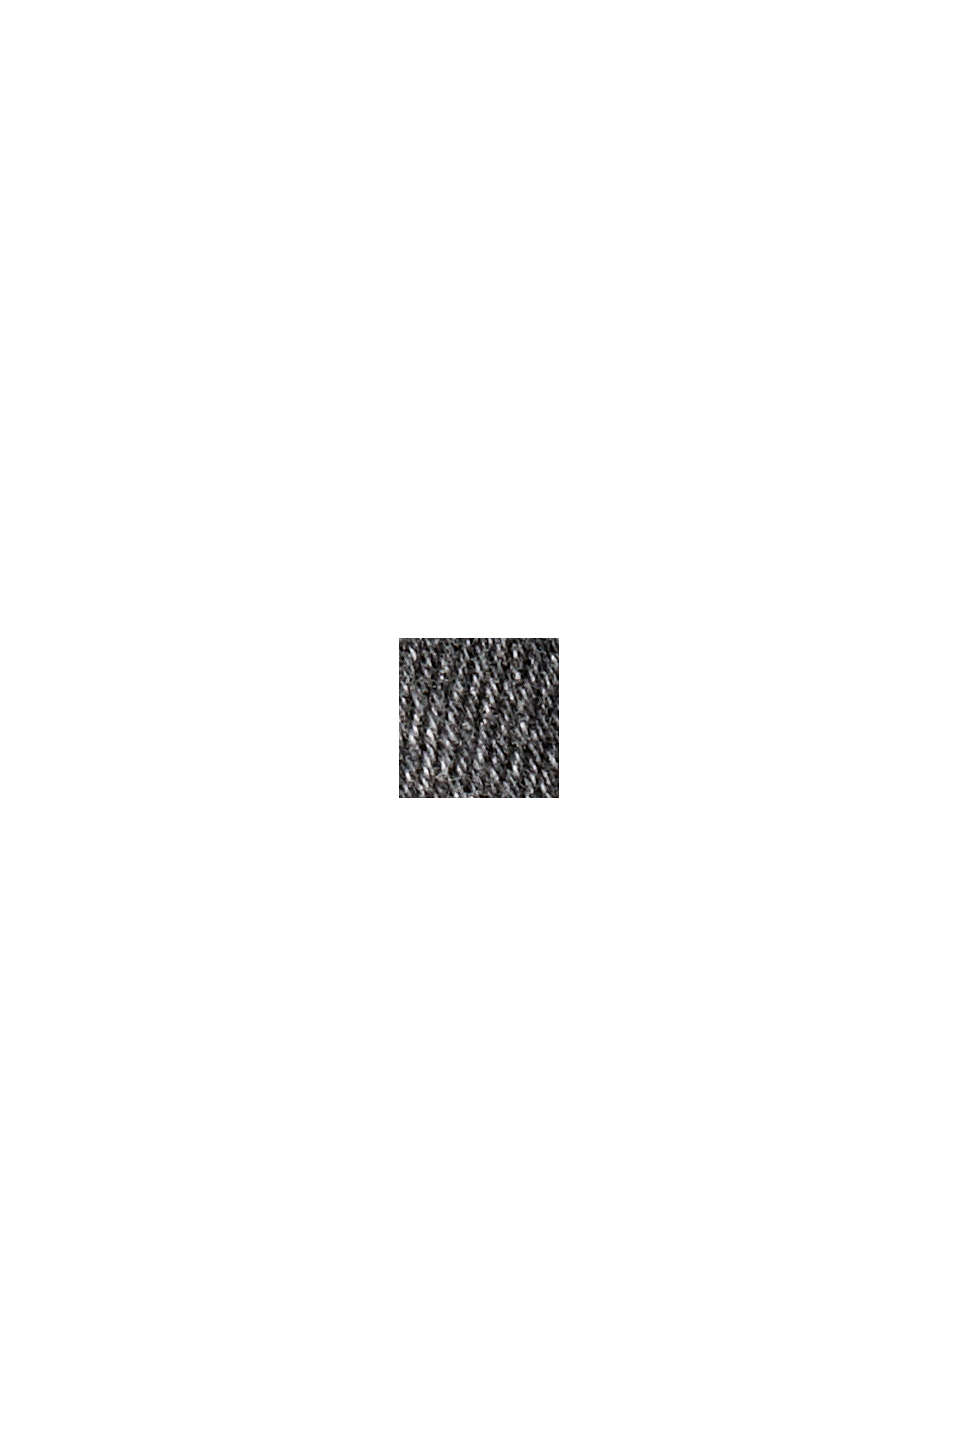 Skrócone elastyczne dżinsy w stylu used, bawełna ekologiczna, BLACK DARK WASHED, swatch